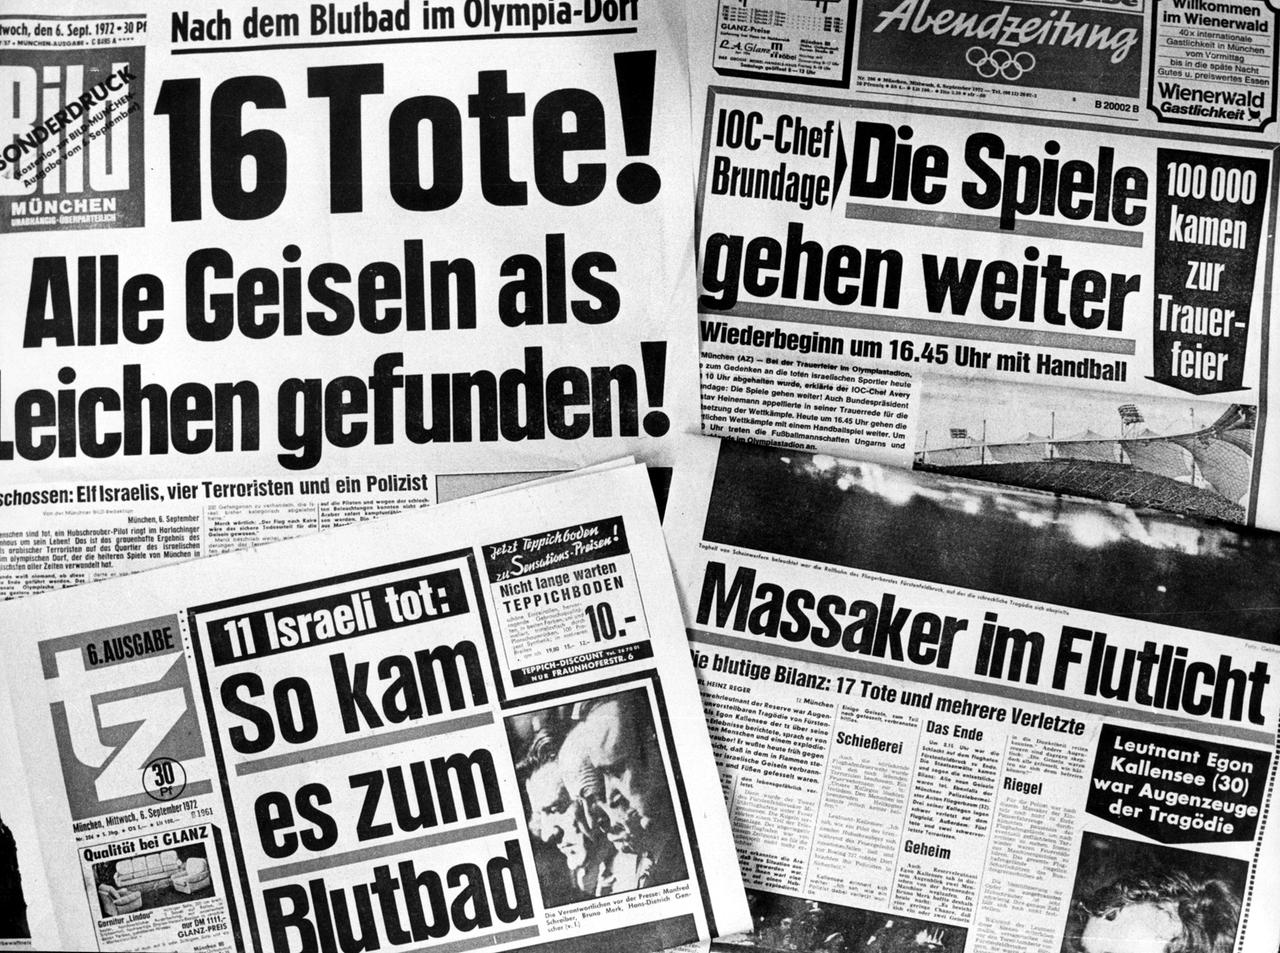 Ein Pressespiegel vom 06.09.1972 zum Attentat bei den Olympischen Sommerspielen in München von arabischen Terroristen der Untergrundorganisation "Schwarzer September" auf israelische Sportler